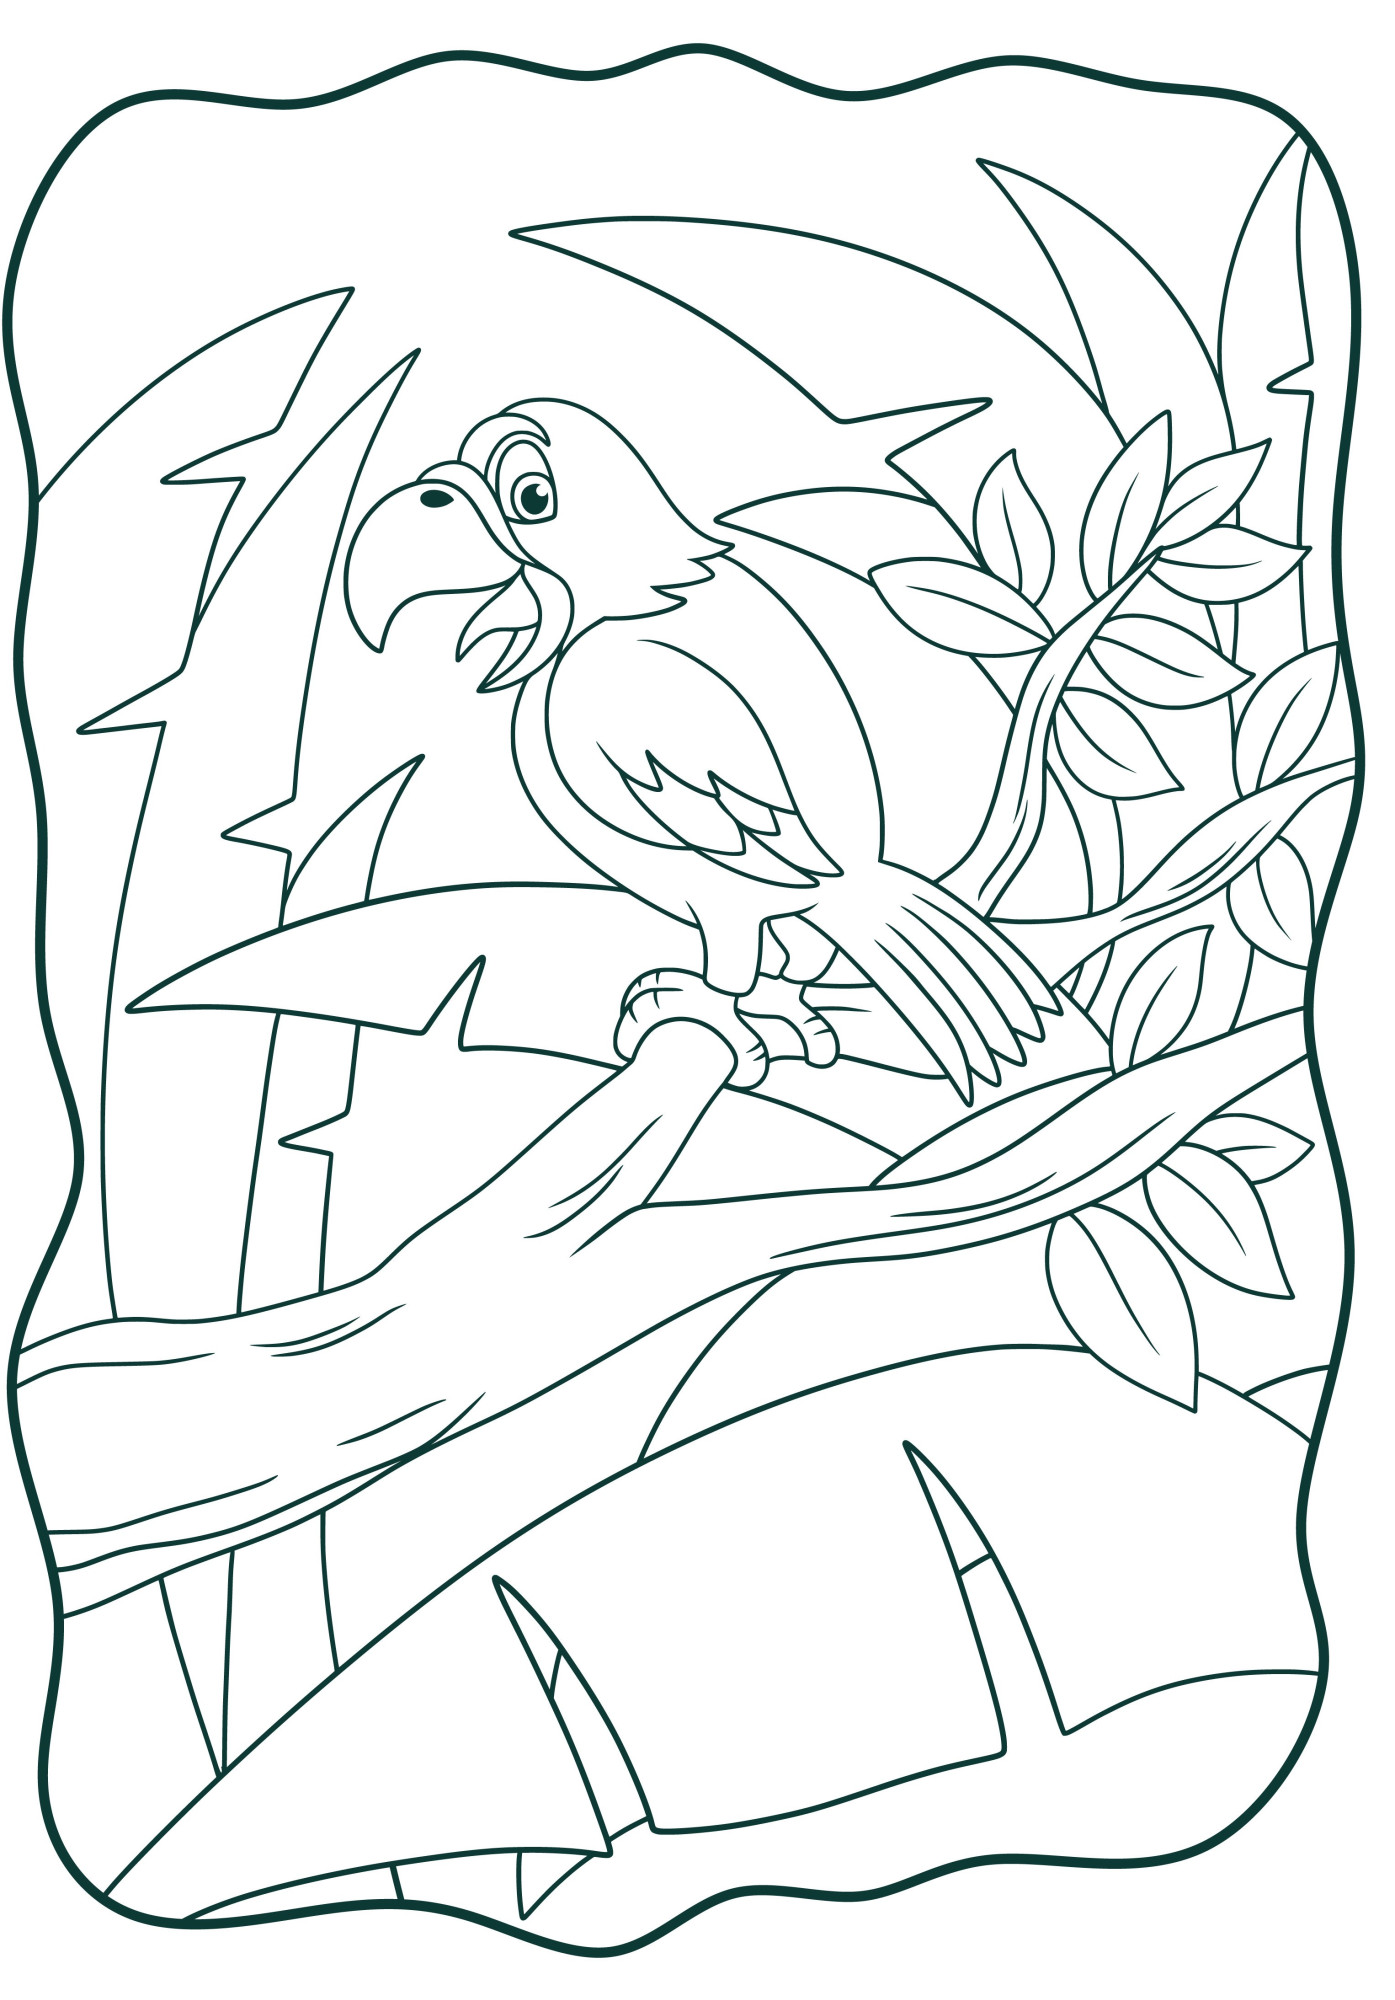 Раскраска для детей: попугай щебечет на стволе тропического дерева